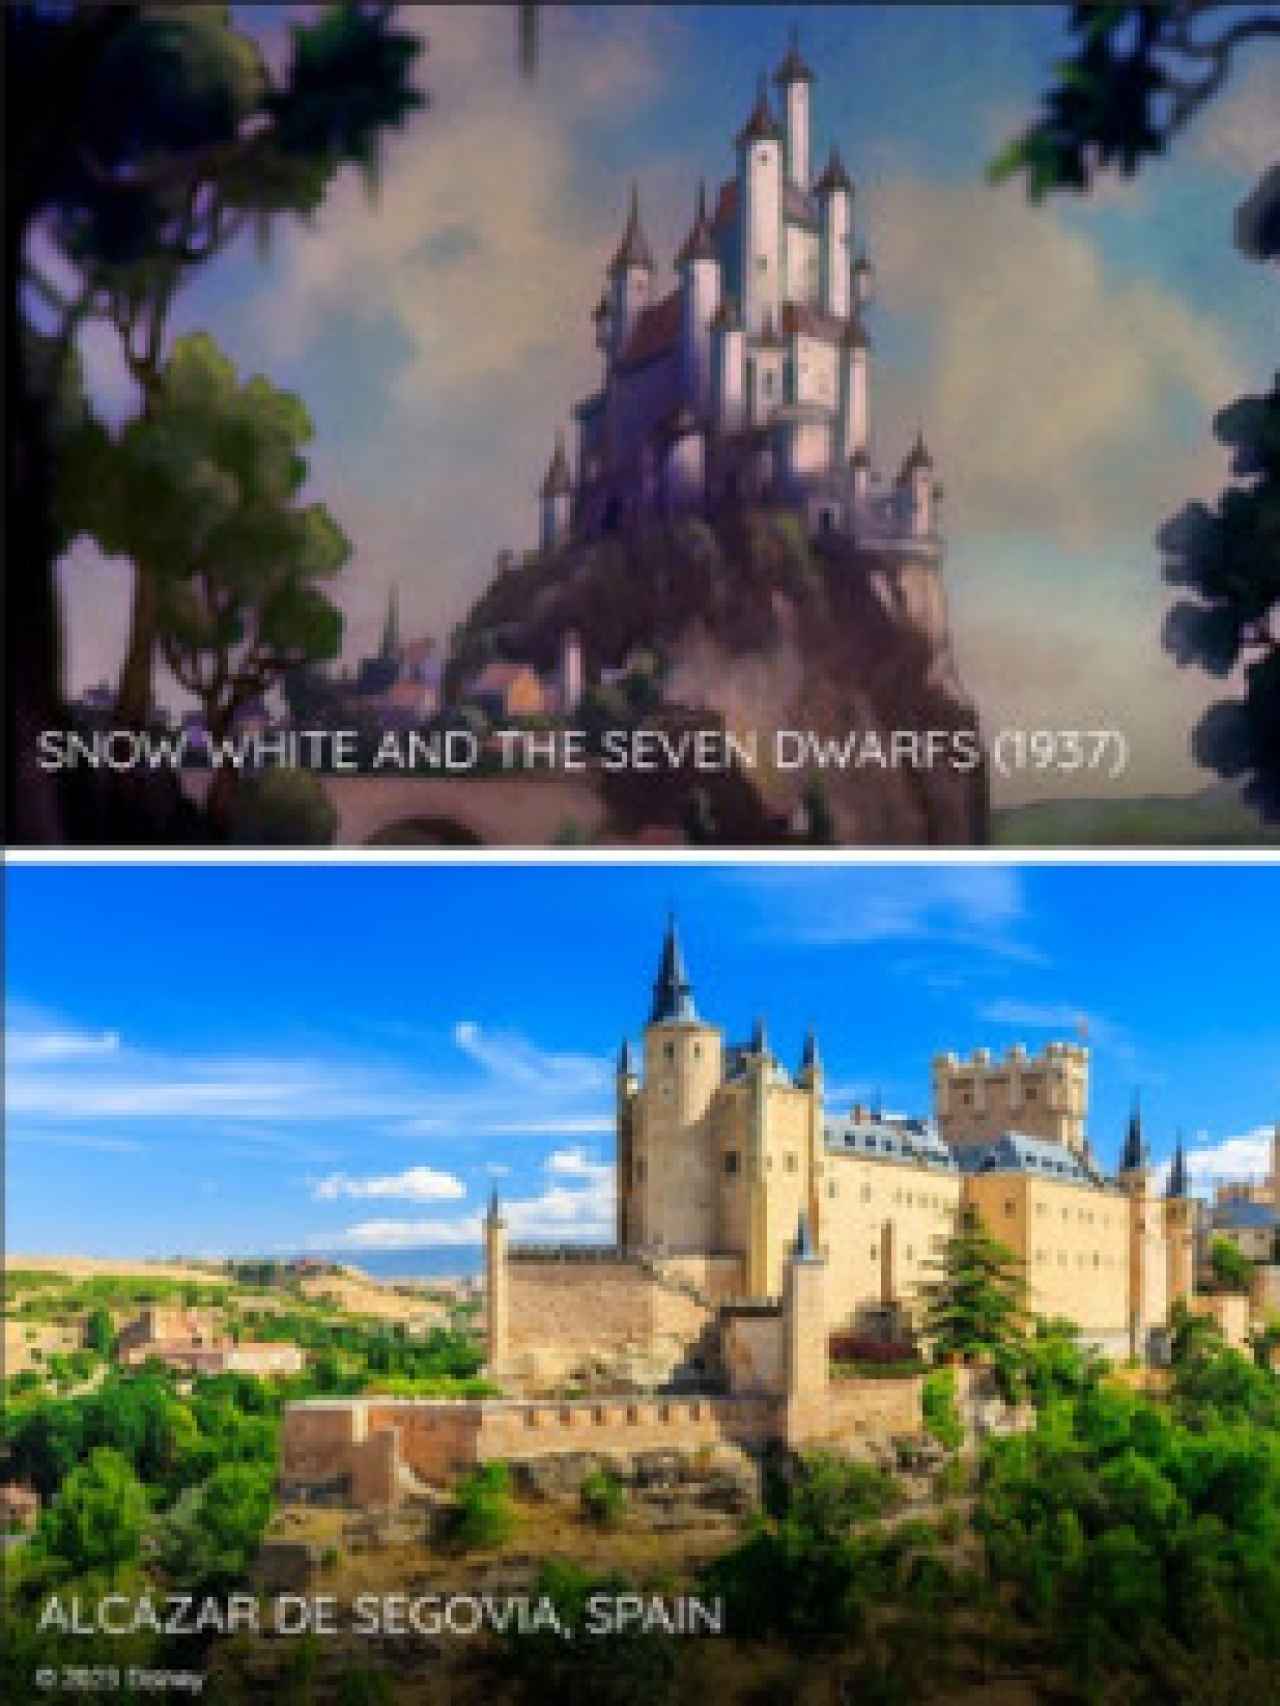 Comparativa entre el castillo de la película (arriba) y el real (abajo).